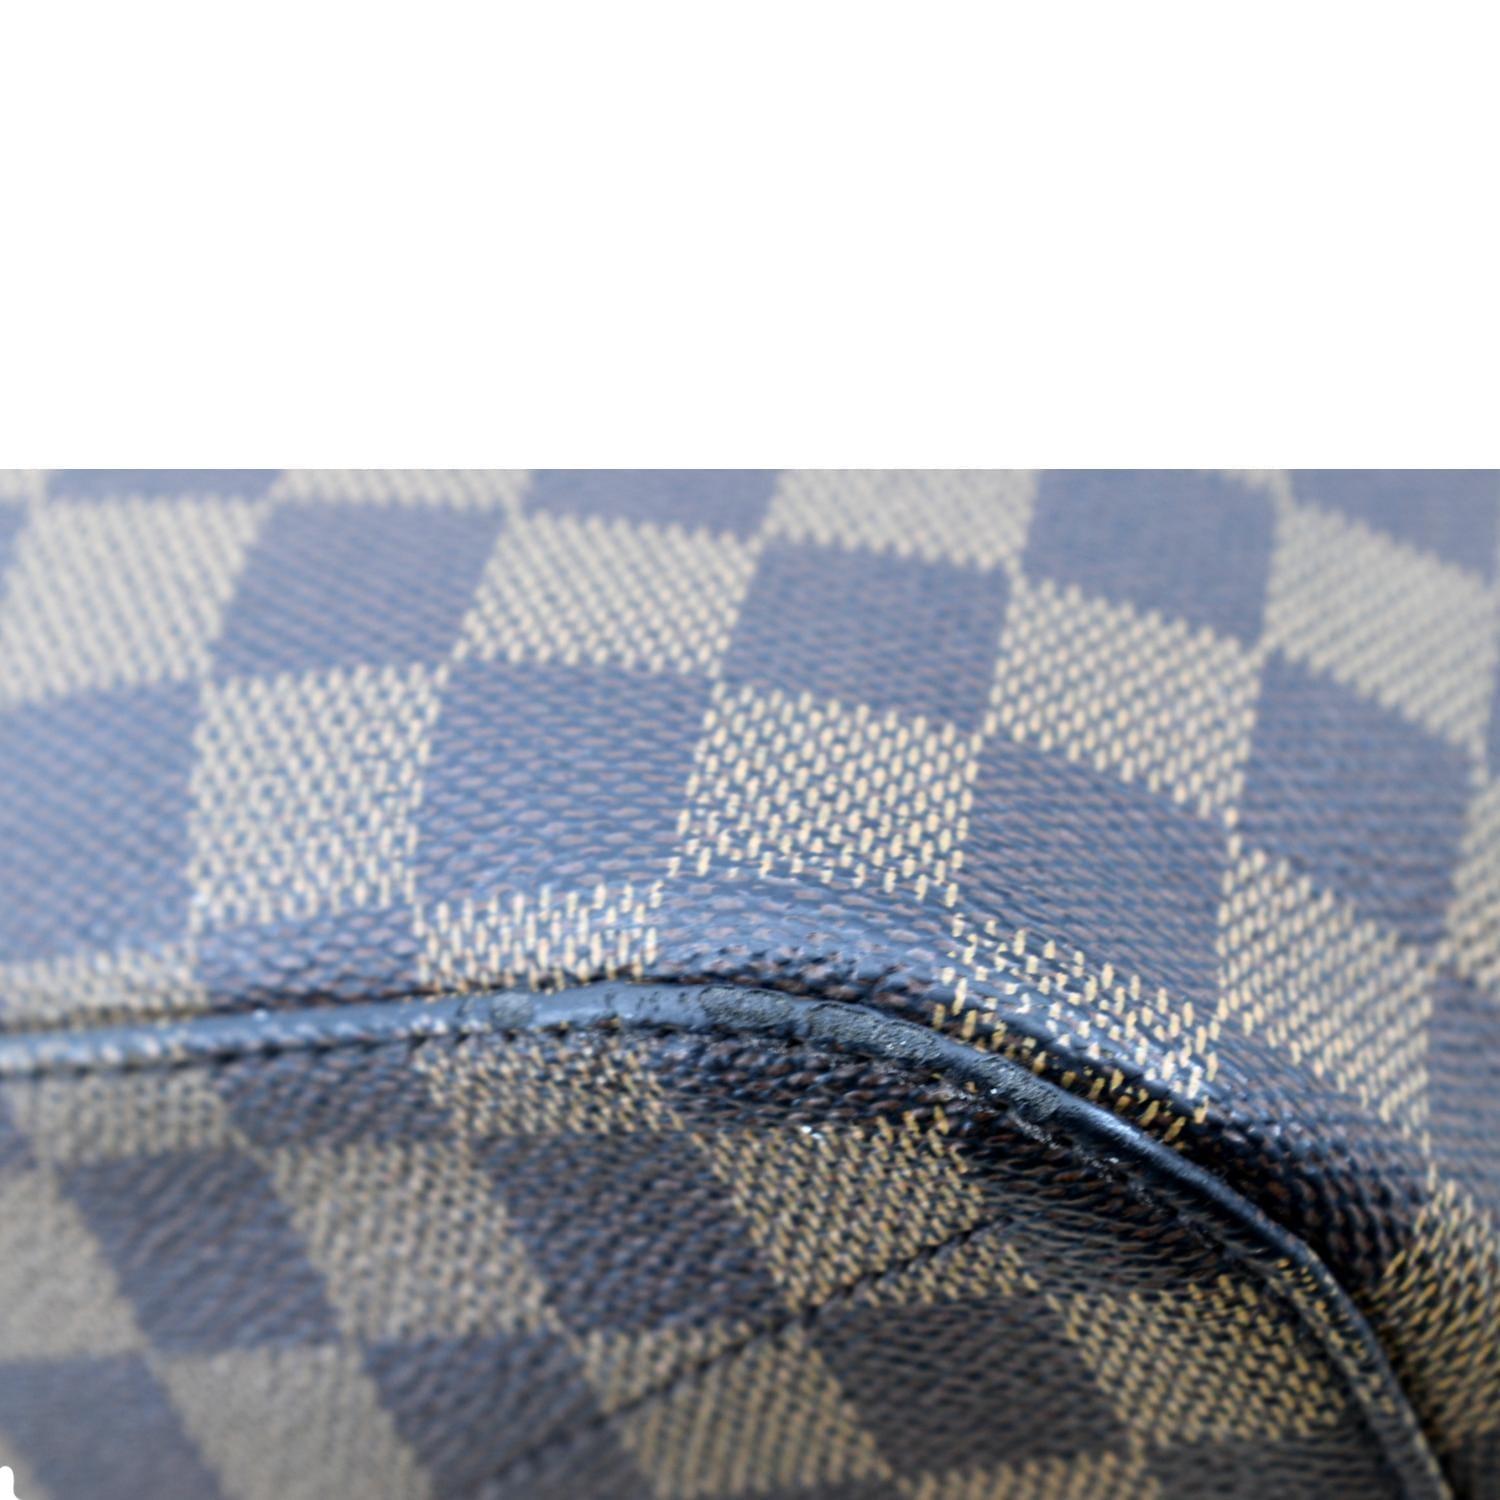 Siena glitter handbag Louis Vuitton Brown in Glitter - 24729798